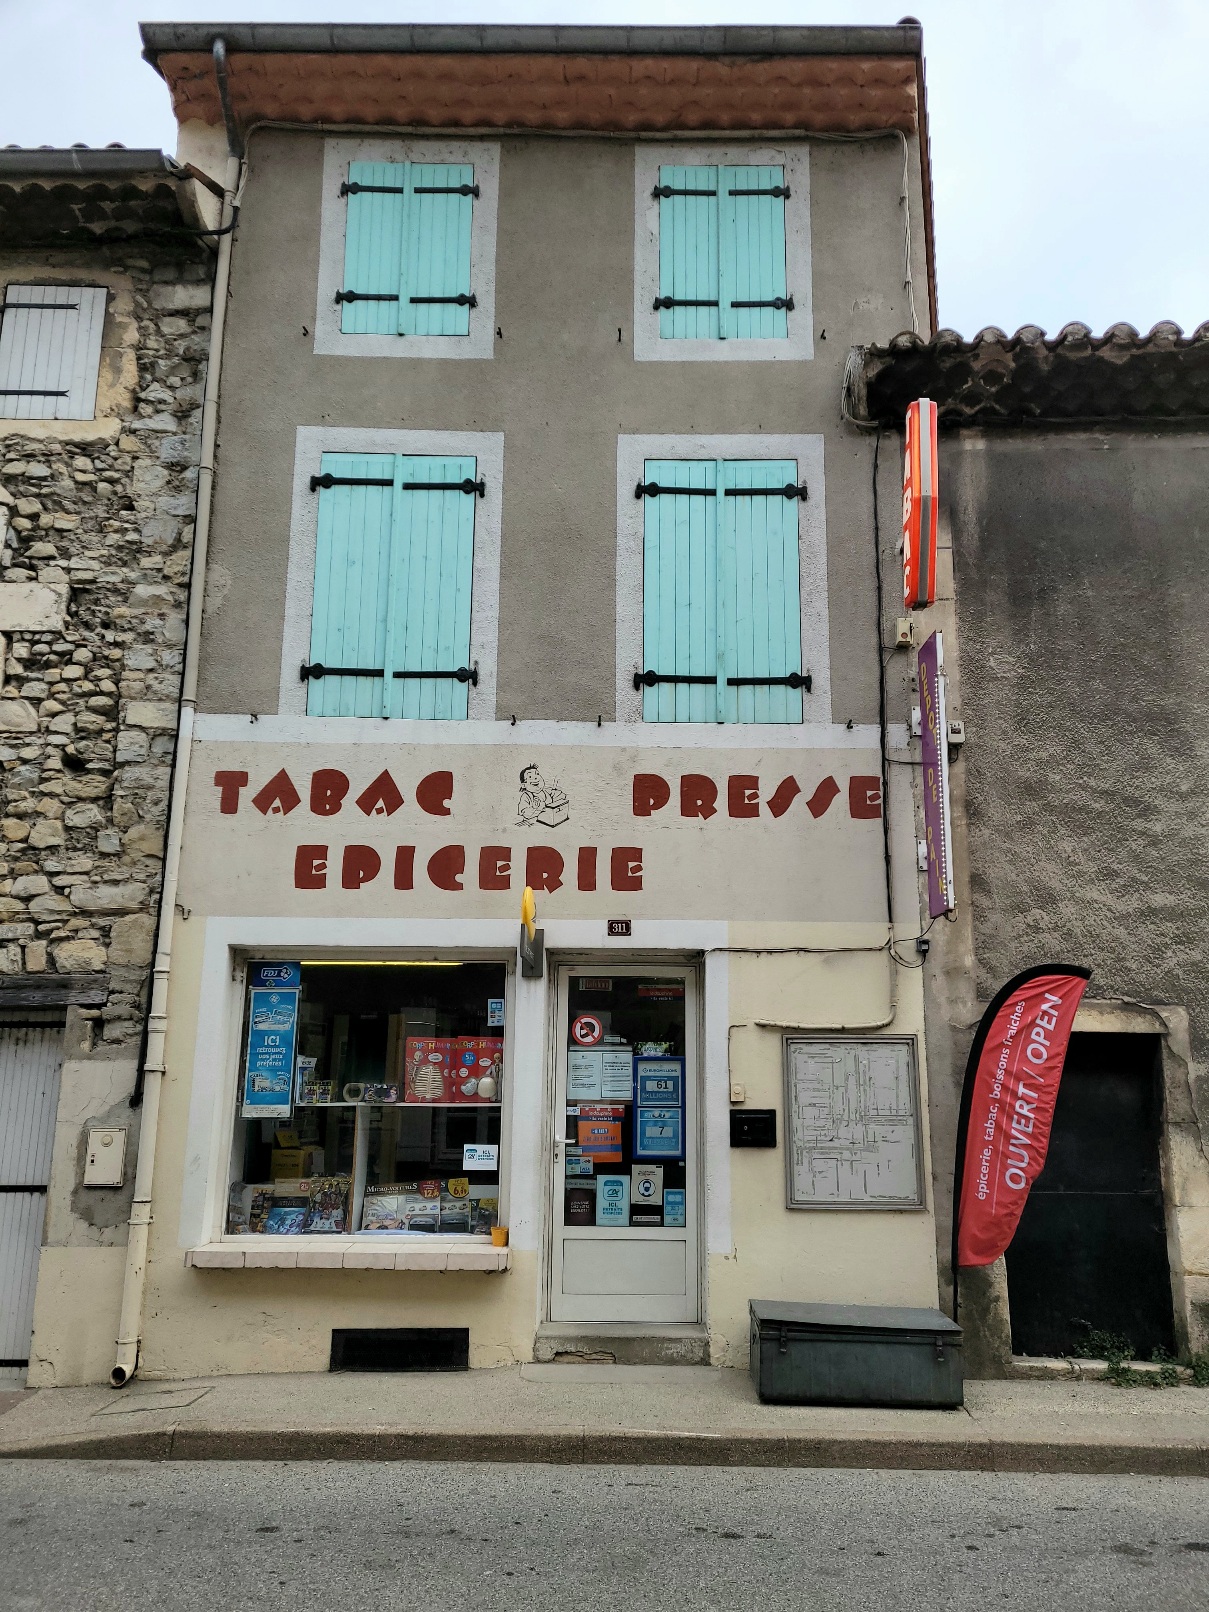 Mur + fond
Bureaux de tabac, presse, FDJ, épicerie, dépôt de pain, Baix Ardèche 30 minute de Valence, 30 minute de Montélimar, 15 minutes de Privas route départementale très passante